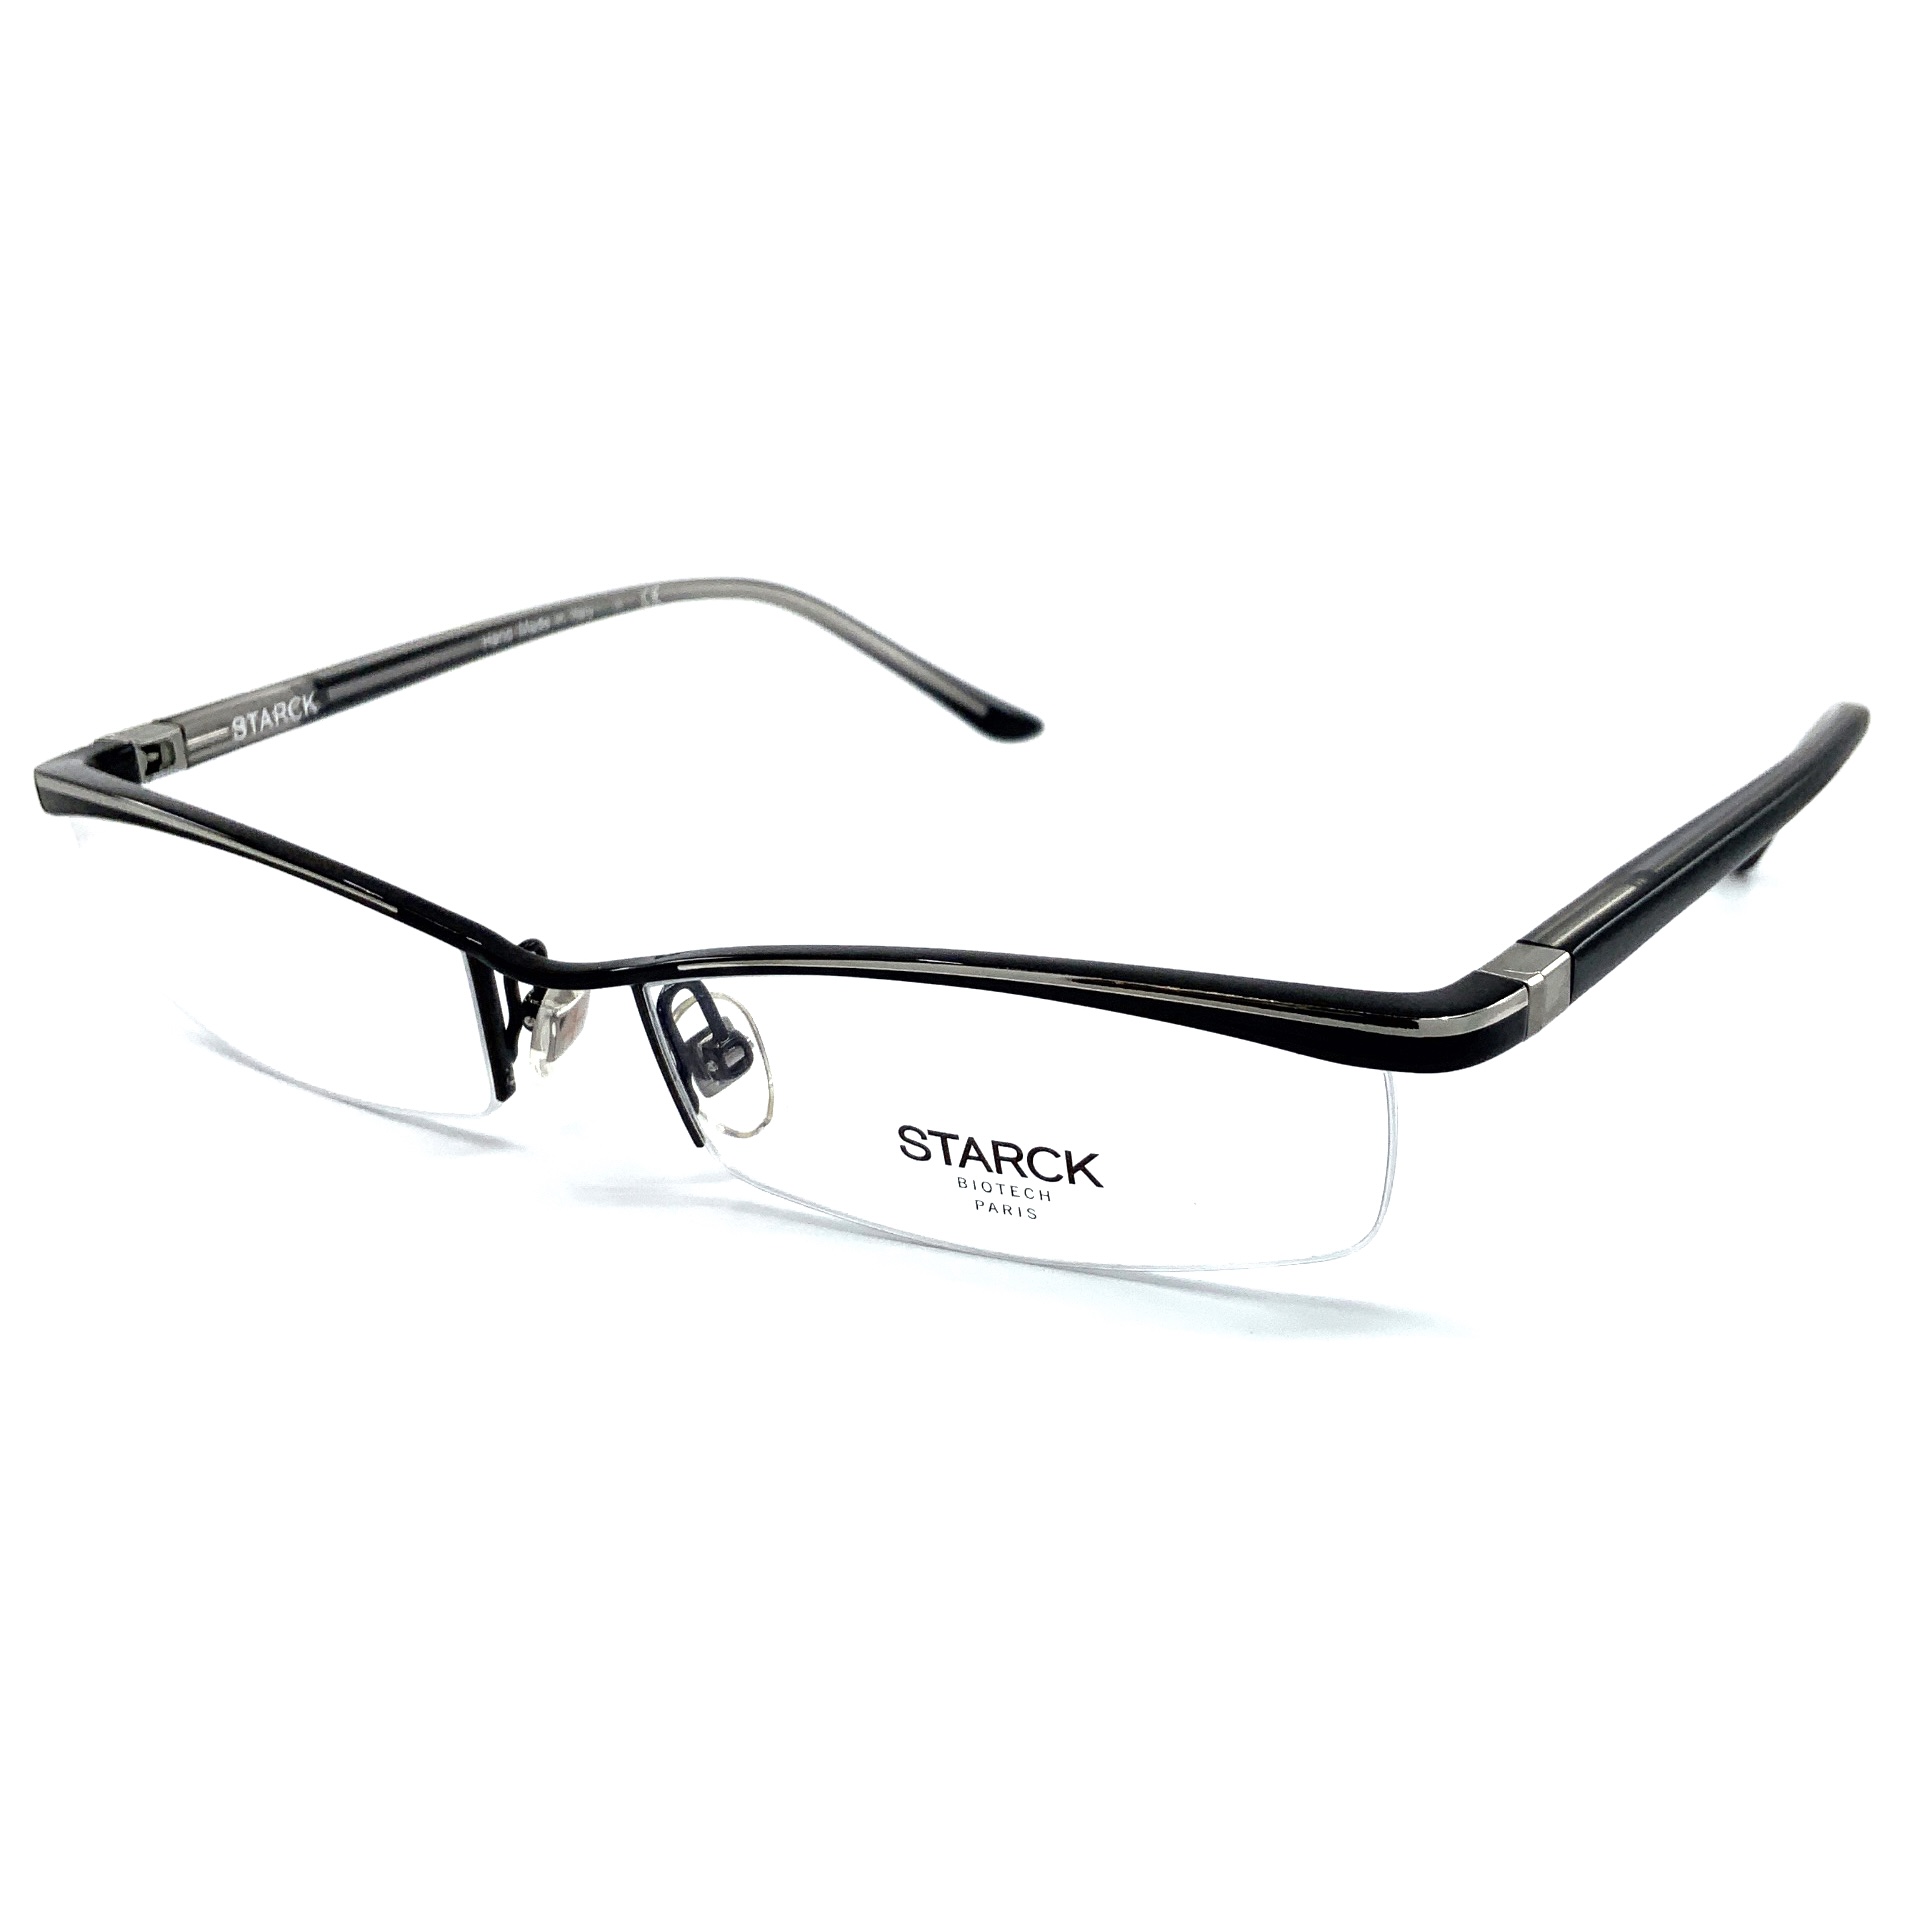 1080円 新素材新作 STARCK EYES スタルクアイズ alain mikli 眼鏡 メガネフレーム アイウェア PL0801-0009 000